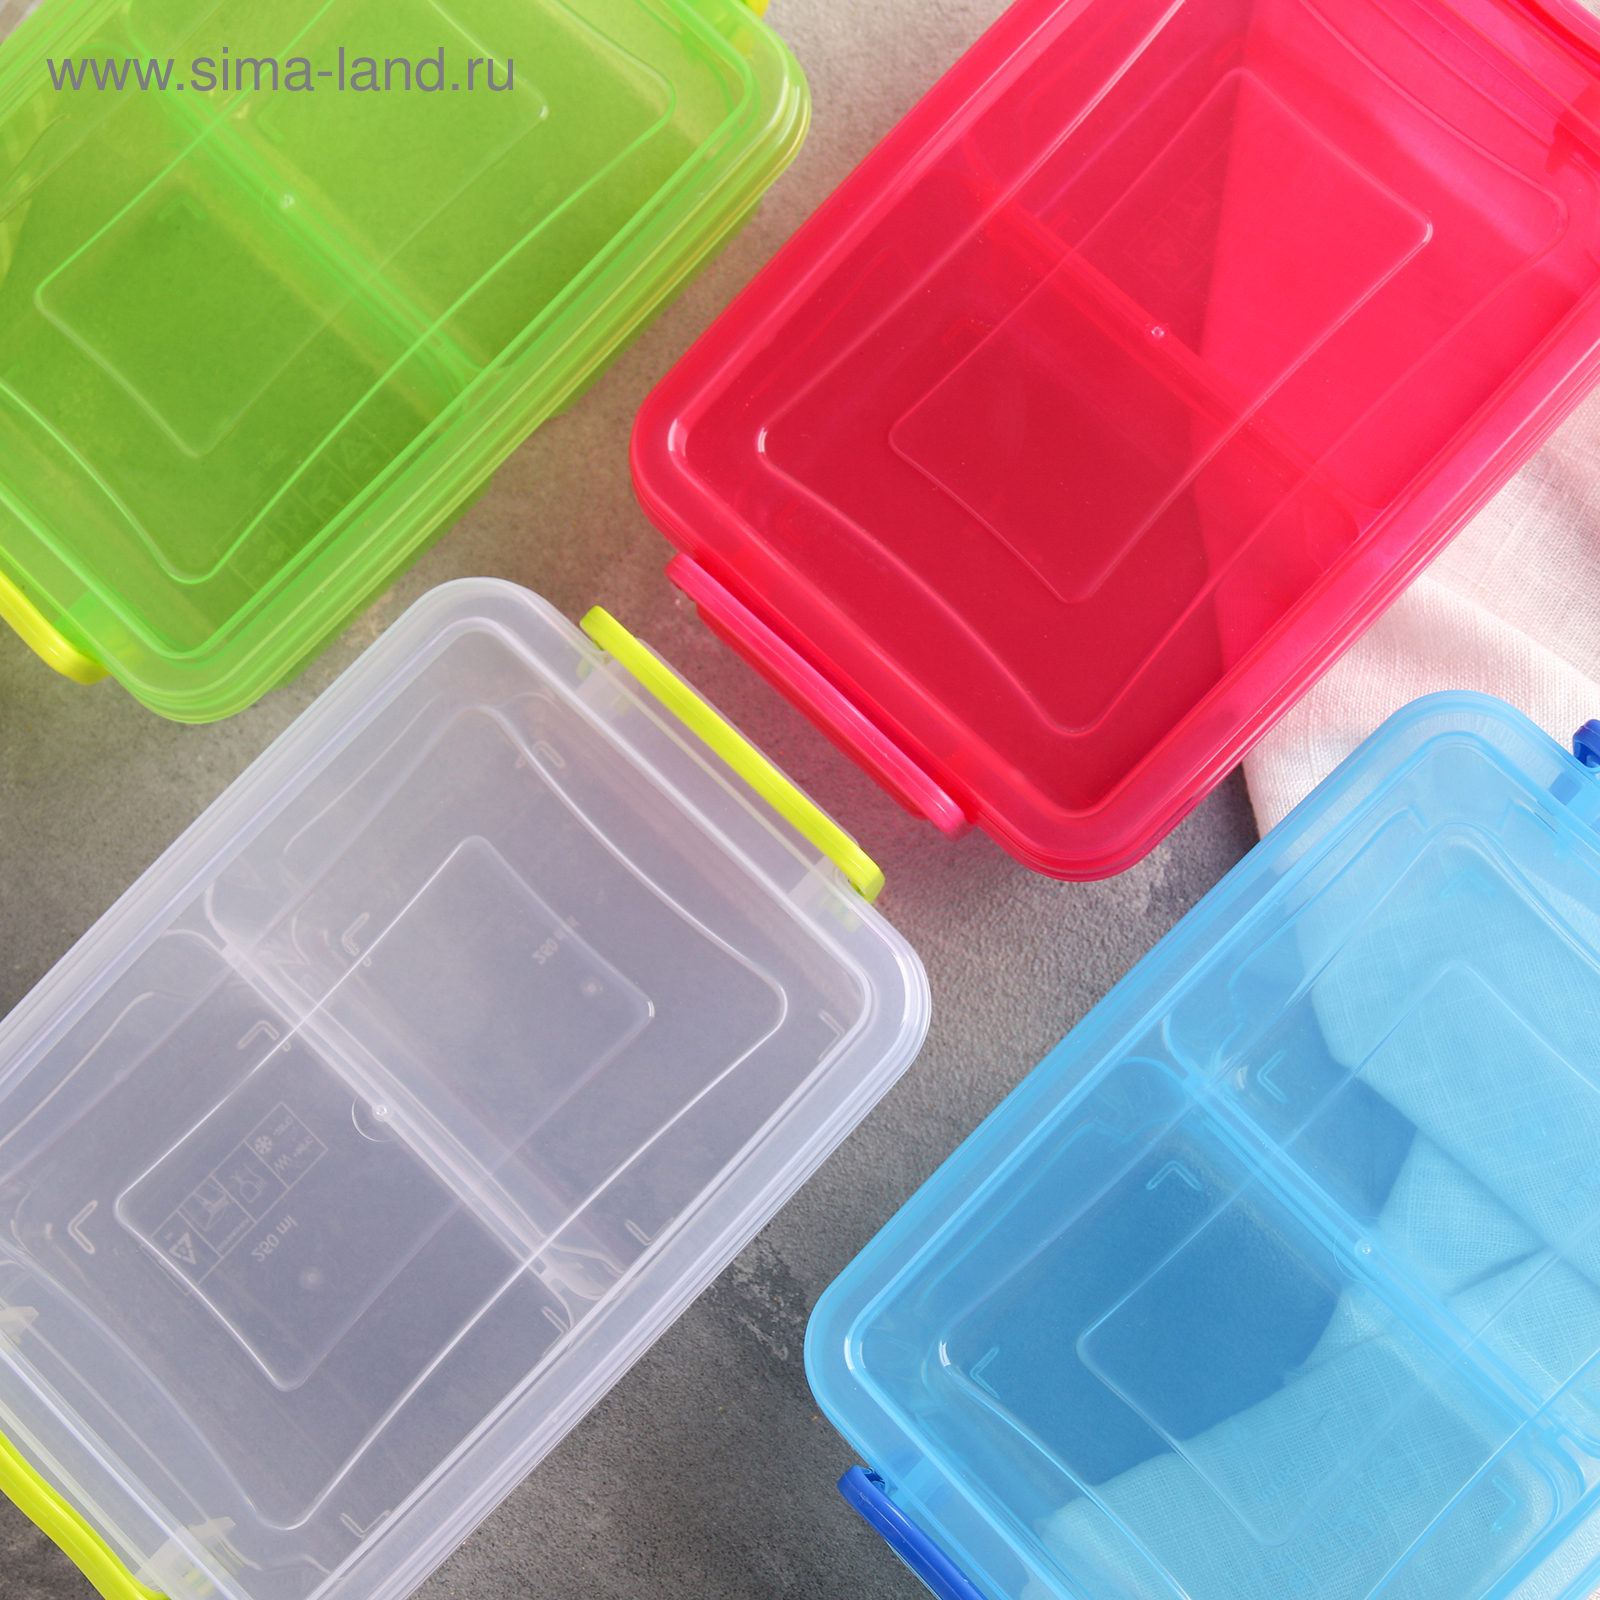 Контейнеры купить интернет магазин. Контейнер idea 0.5. Пластмассовые контейнеры для хранения. Пластиковая коробка для хранения. Контейнеры разноцветные пластиковые.